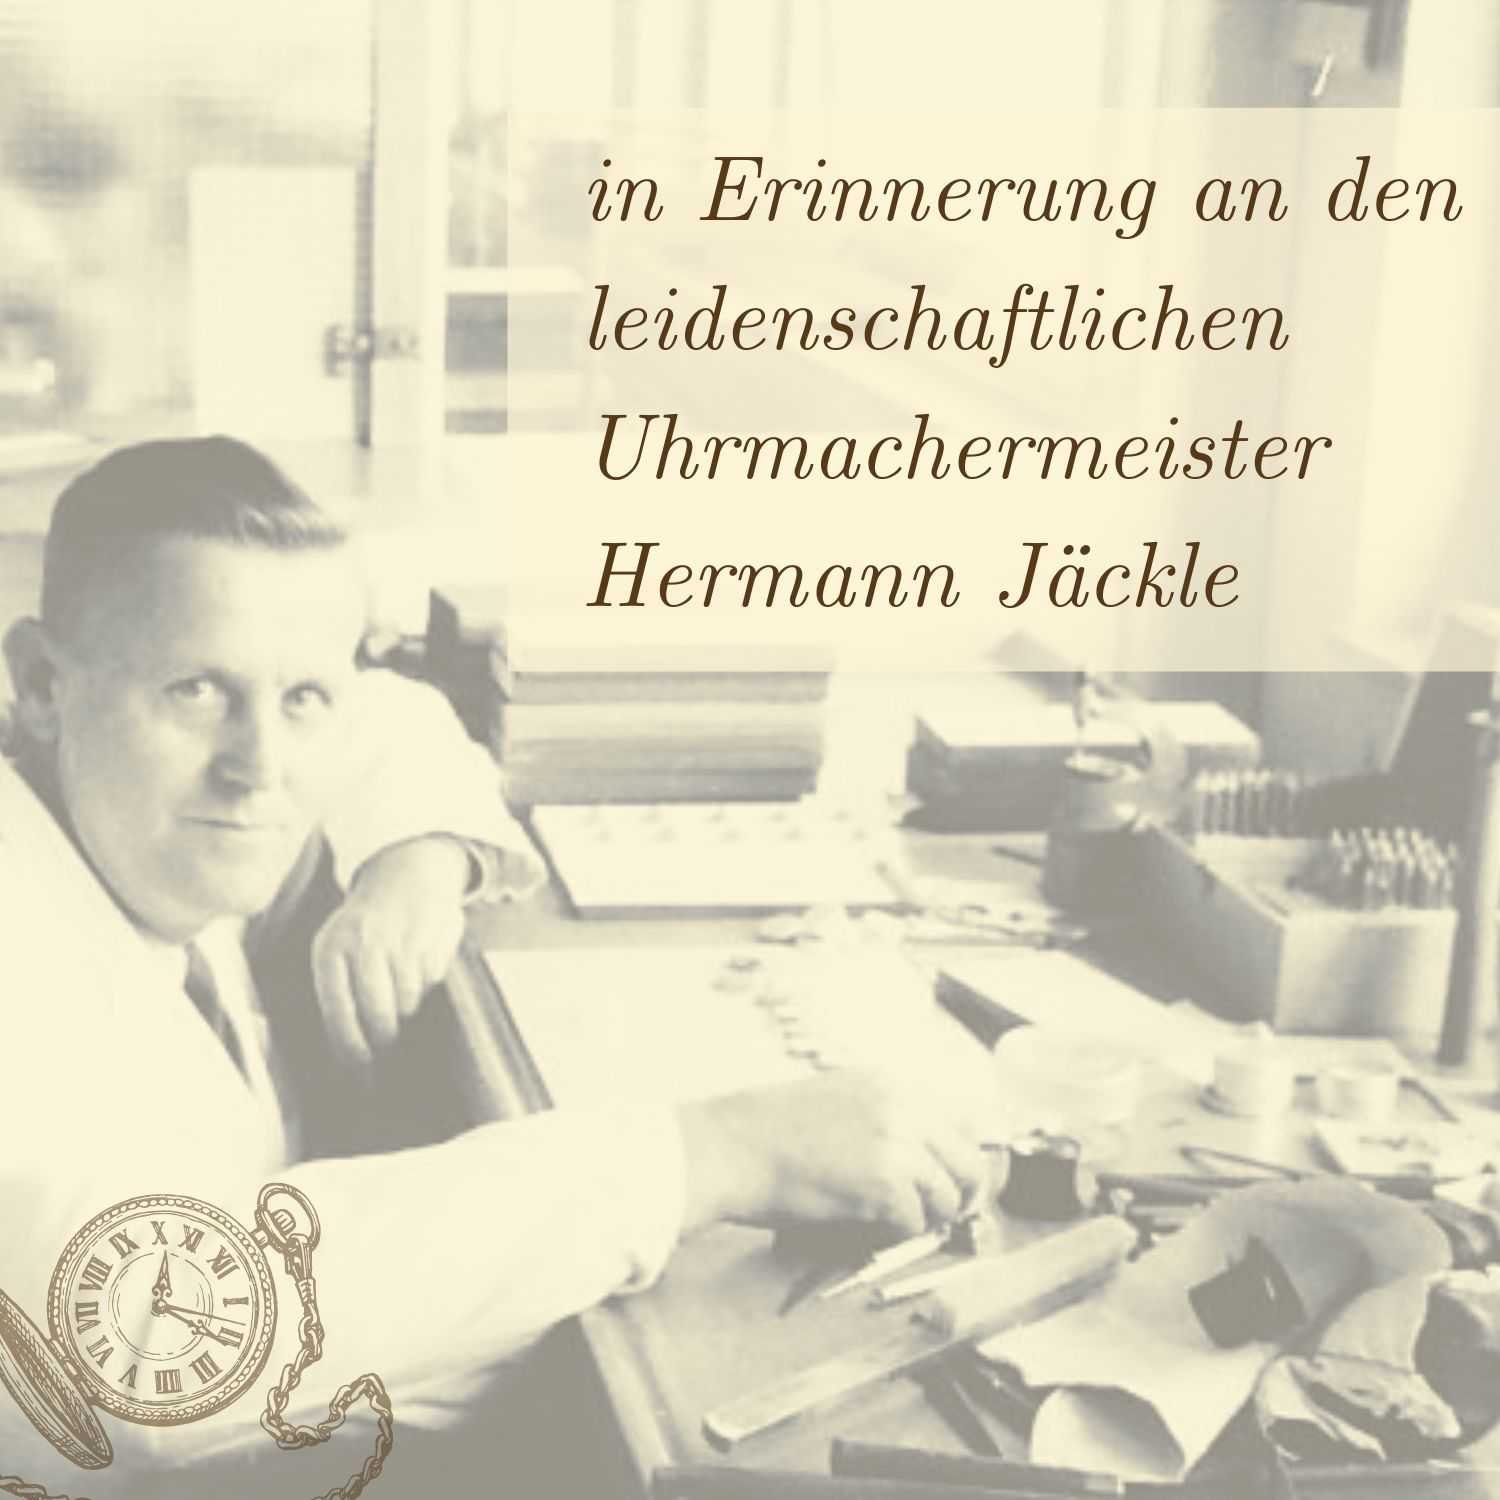 & schwarz Hermann Jäckle incl. mm, IV Reiseetui Kette Taschenuhr Quarz Frankfurt 43